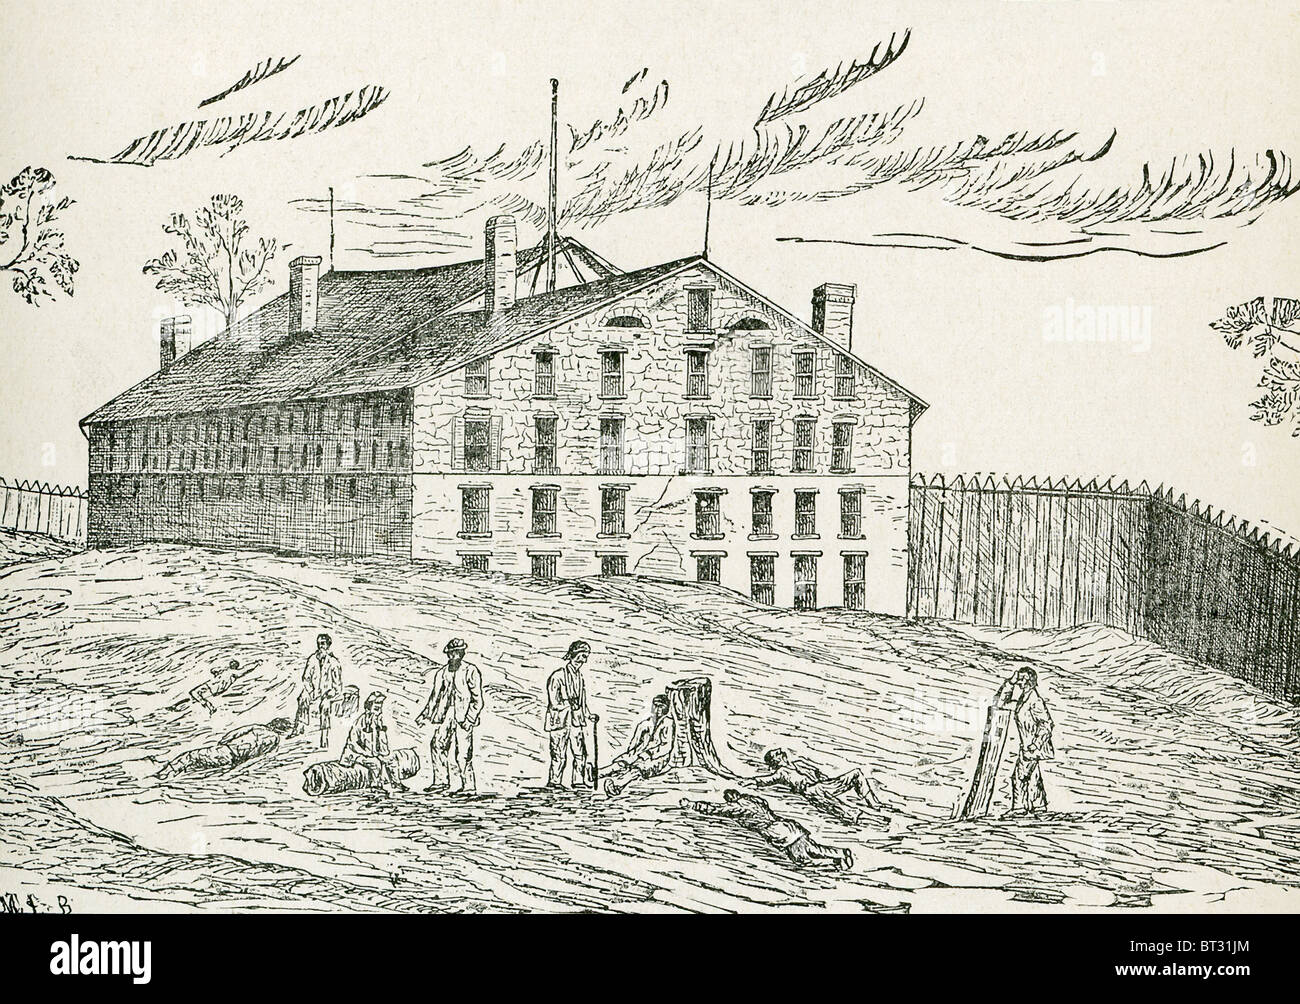 Libby Gefängnis, erbaut 1845-1852 in Richmond, Virginia, wurde von den Eidgenossen während des amerikanischen Bürgerkrieges verwendet. Stockfoto